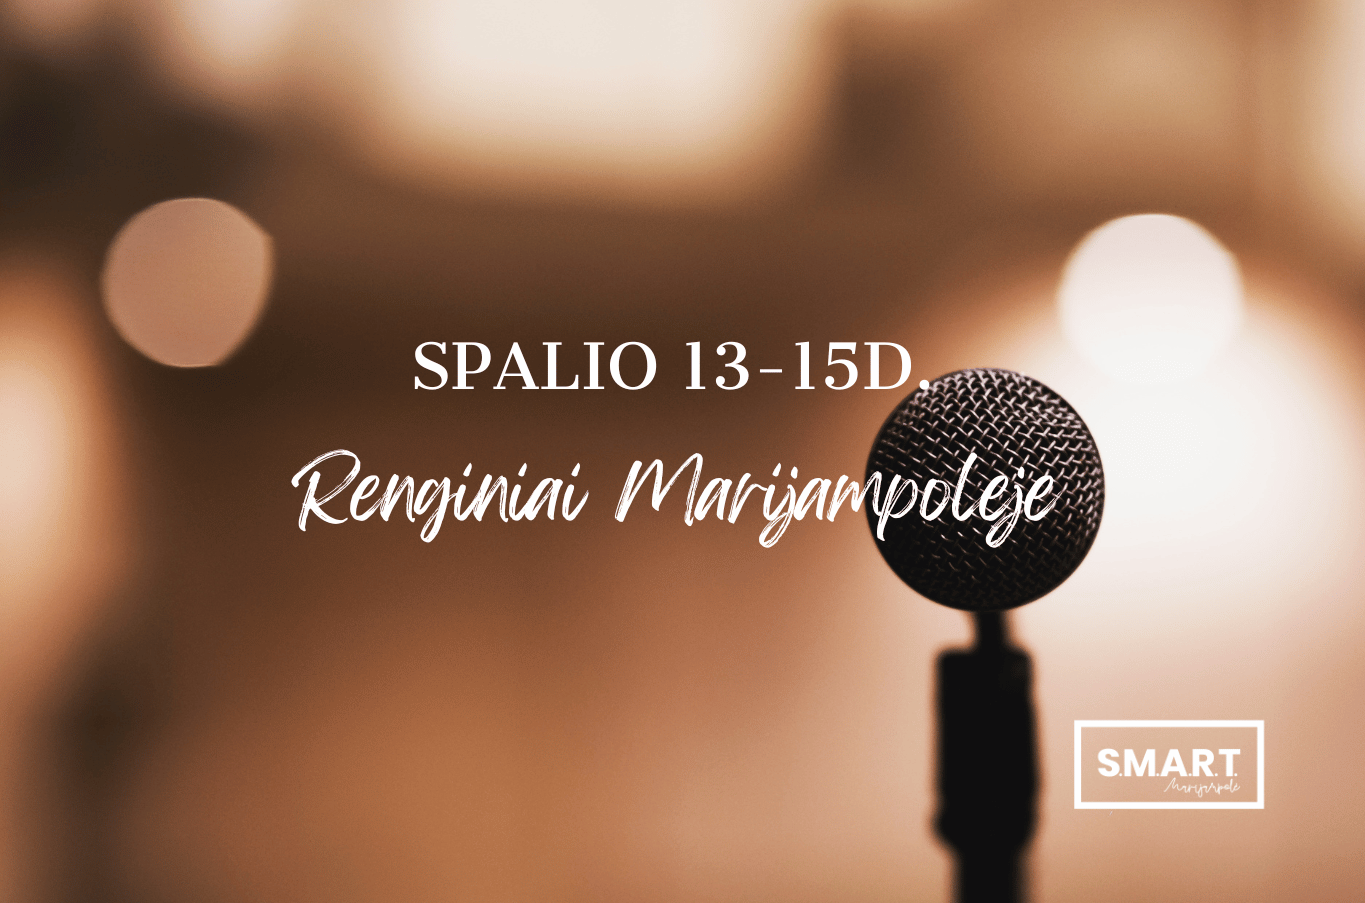 You are currently viewing Savaitgalio renginiai Marijampolėje | 10.13-10.15